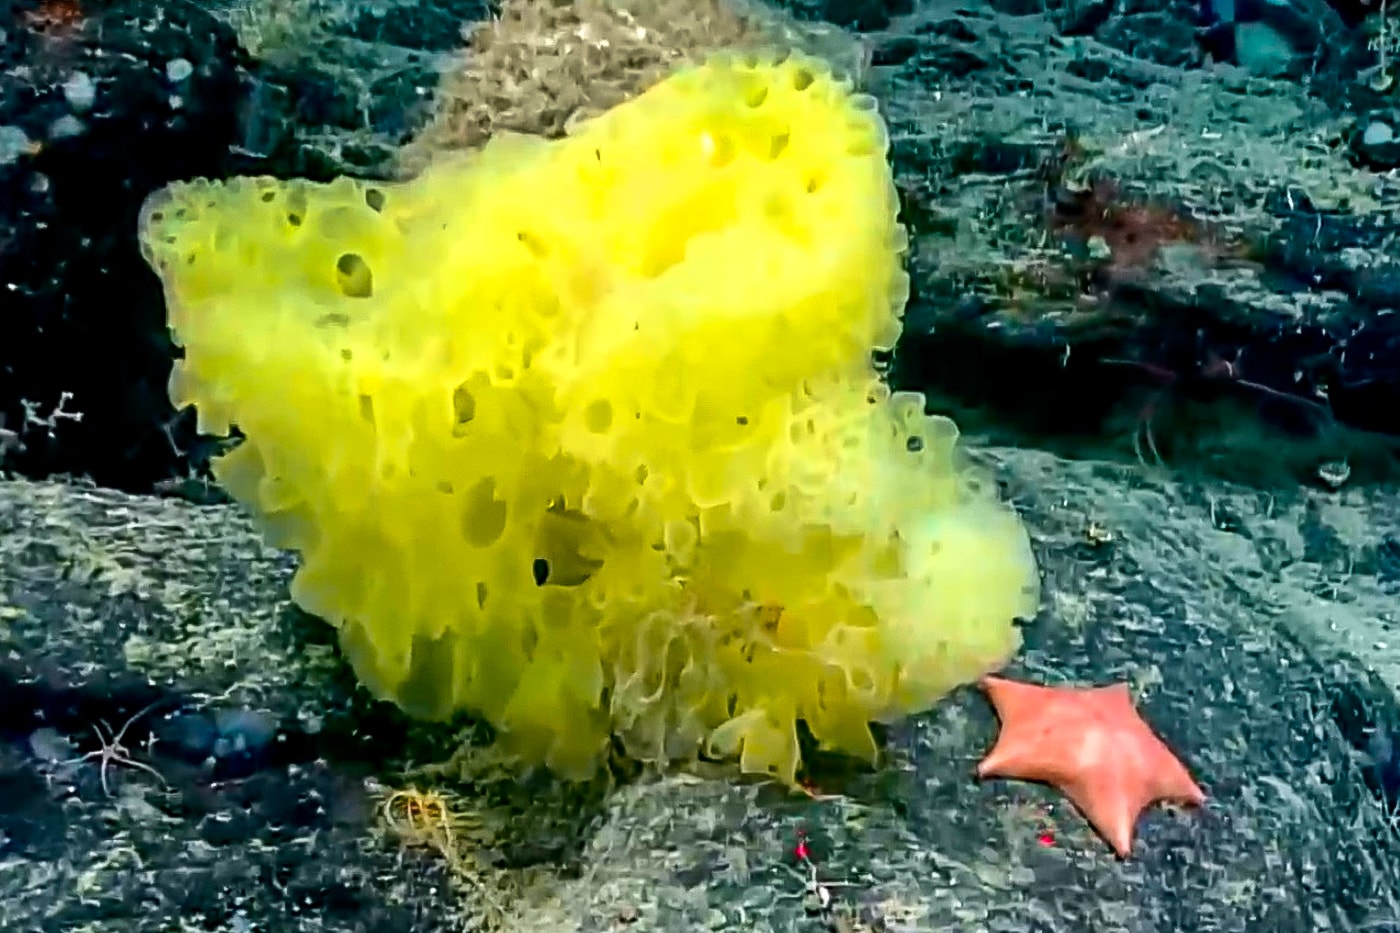 大西洋で本物のスポンジ・ボブとパトリック・スターが発見される Real Life SpongeBob Patrick Star Atlantic Ocean Photo Info